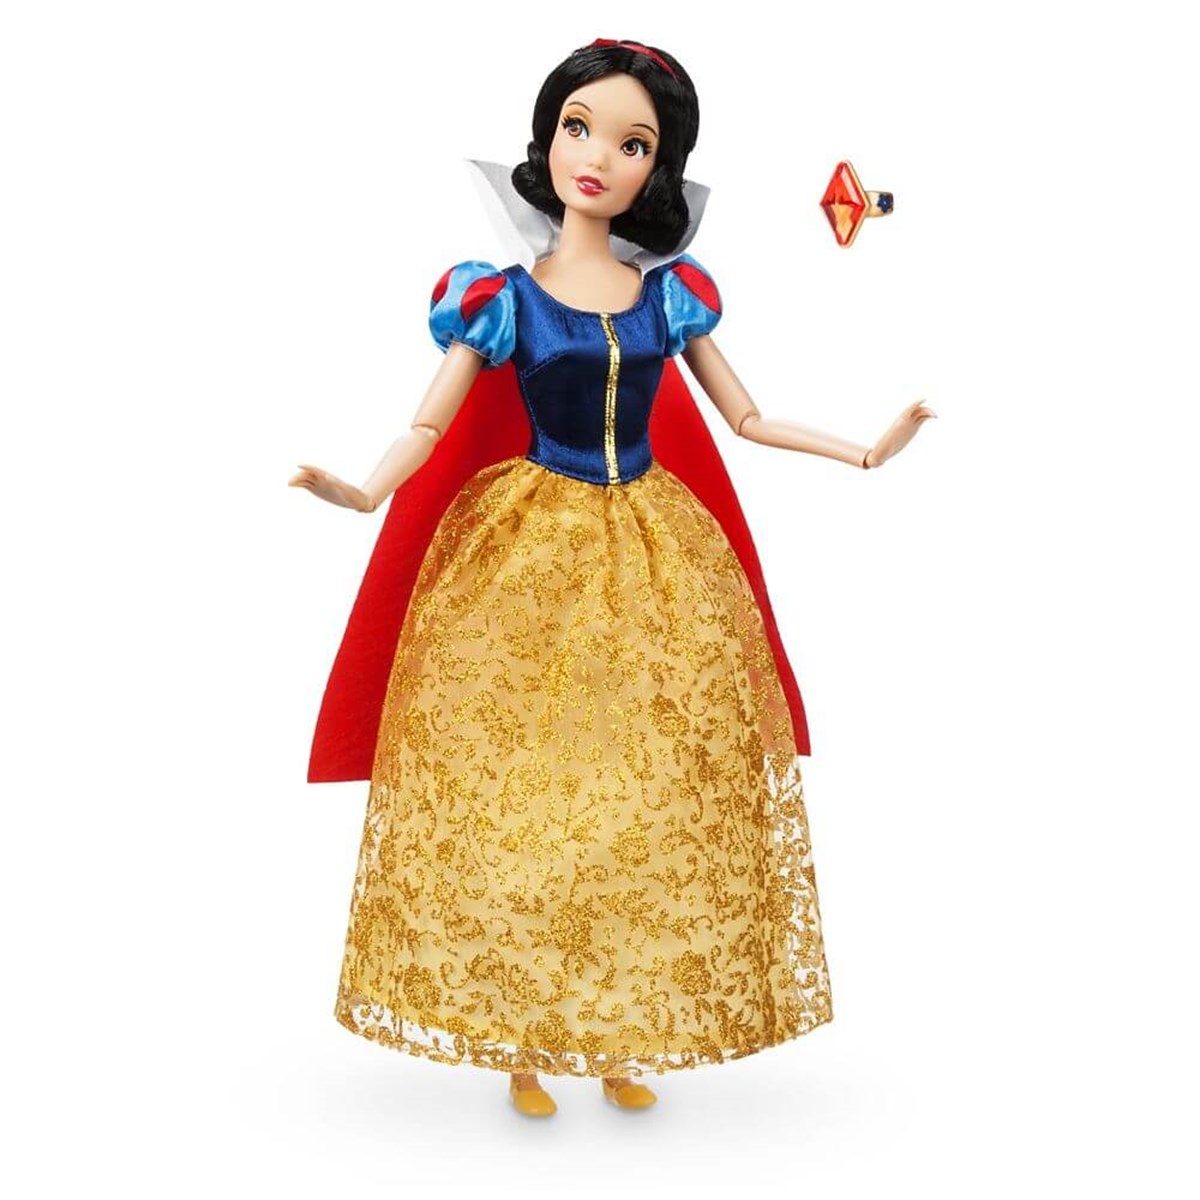 Disney Prensesleri Pamuk Prenses Oyuncak Bebek en uygun fiyatlarla Dobişko  Oyuncak'ta!